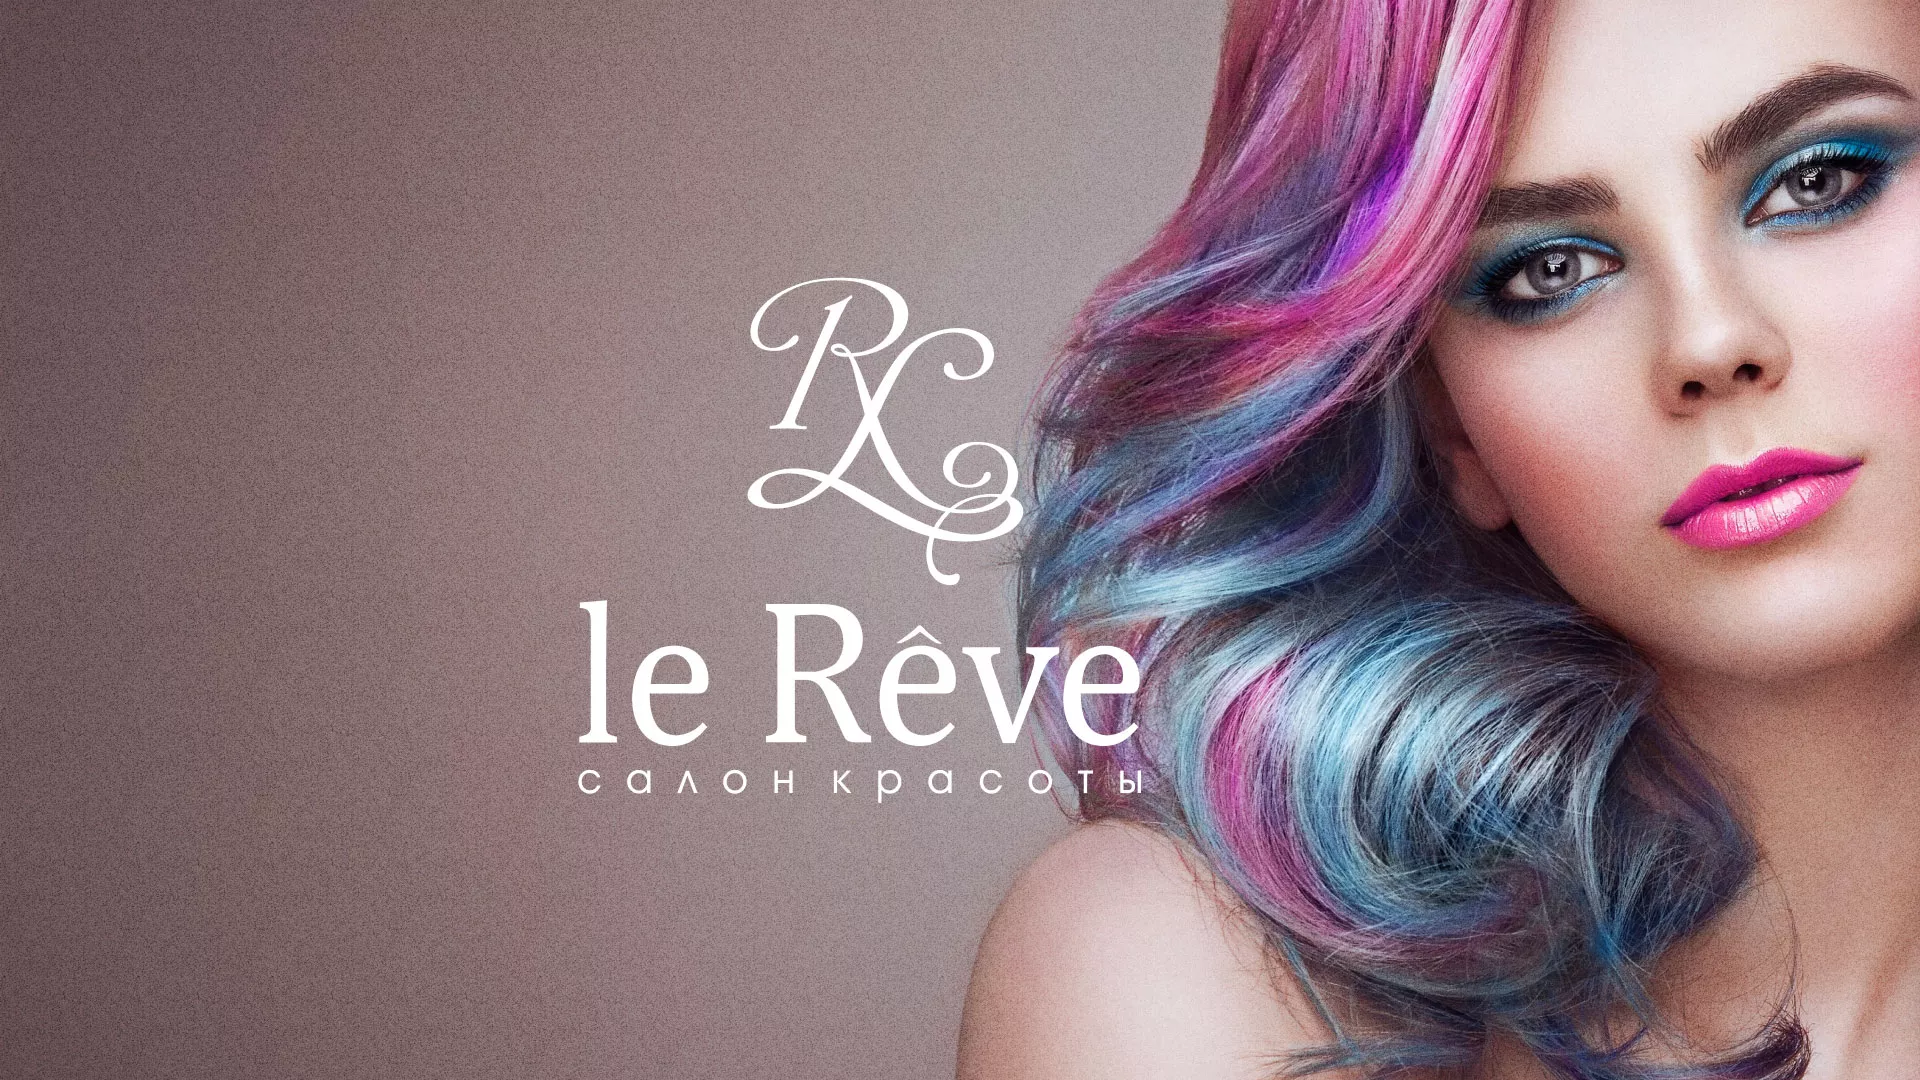 Создание сайта для салона красоты «Le Reve» в Свирске